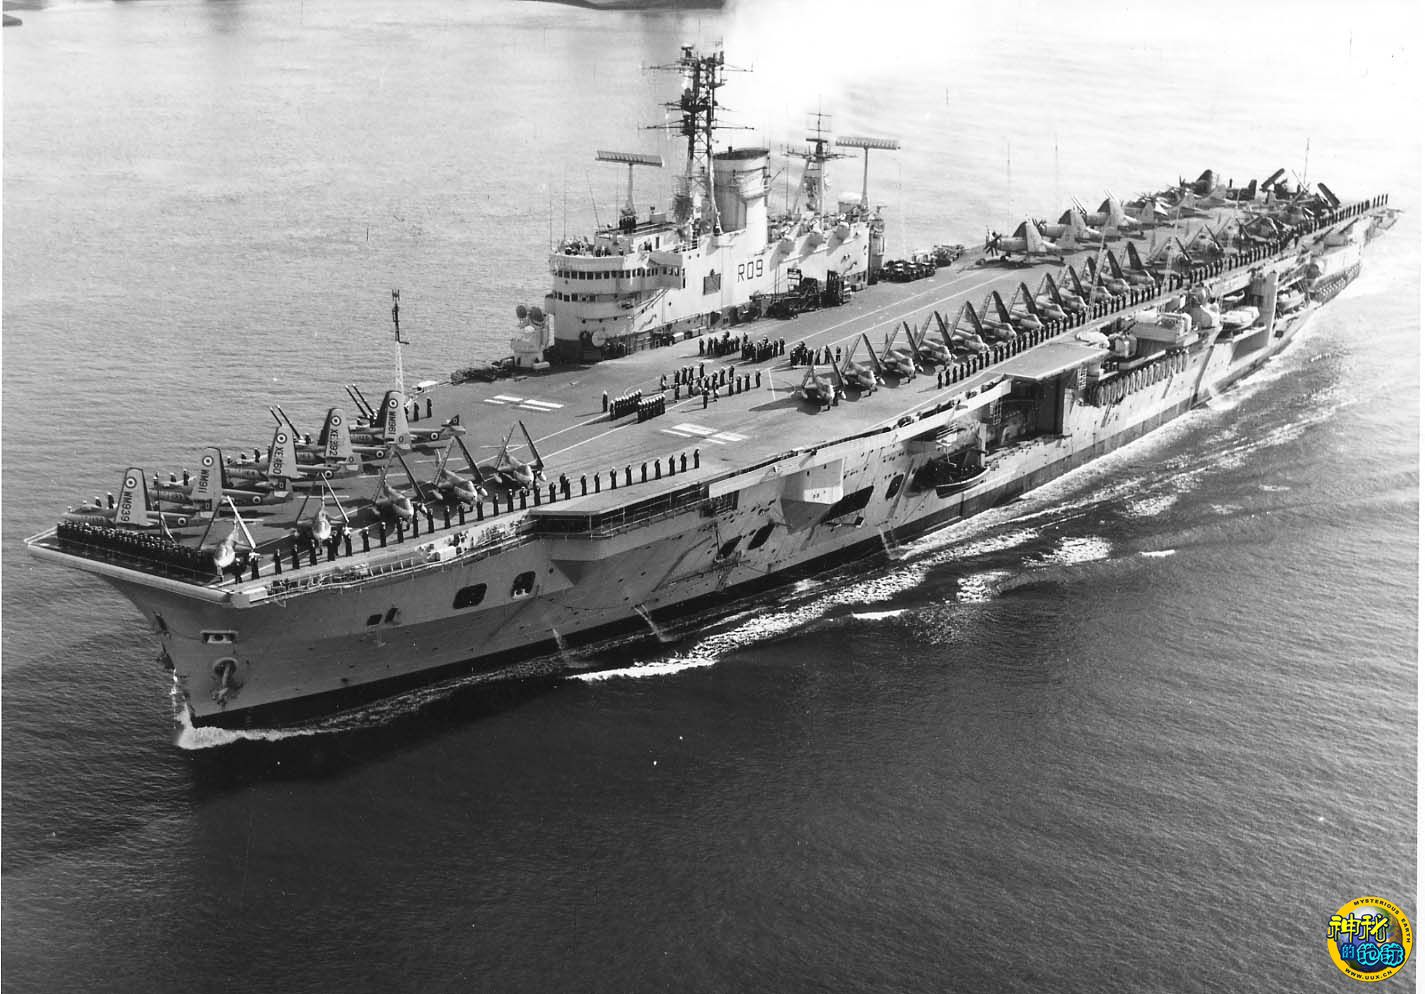 皇家方舟號航空母艦(英國無敵級航母-舷號R07-1985年服役)